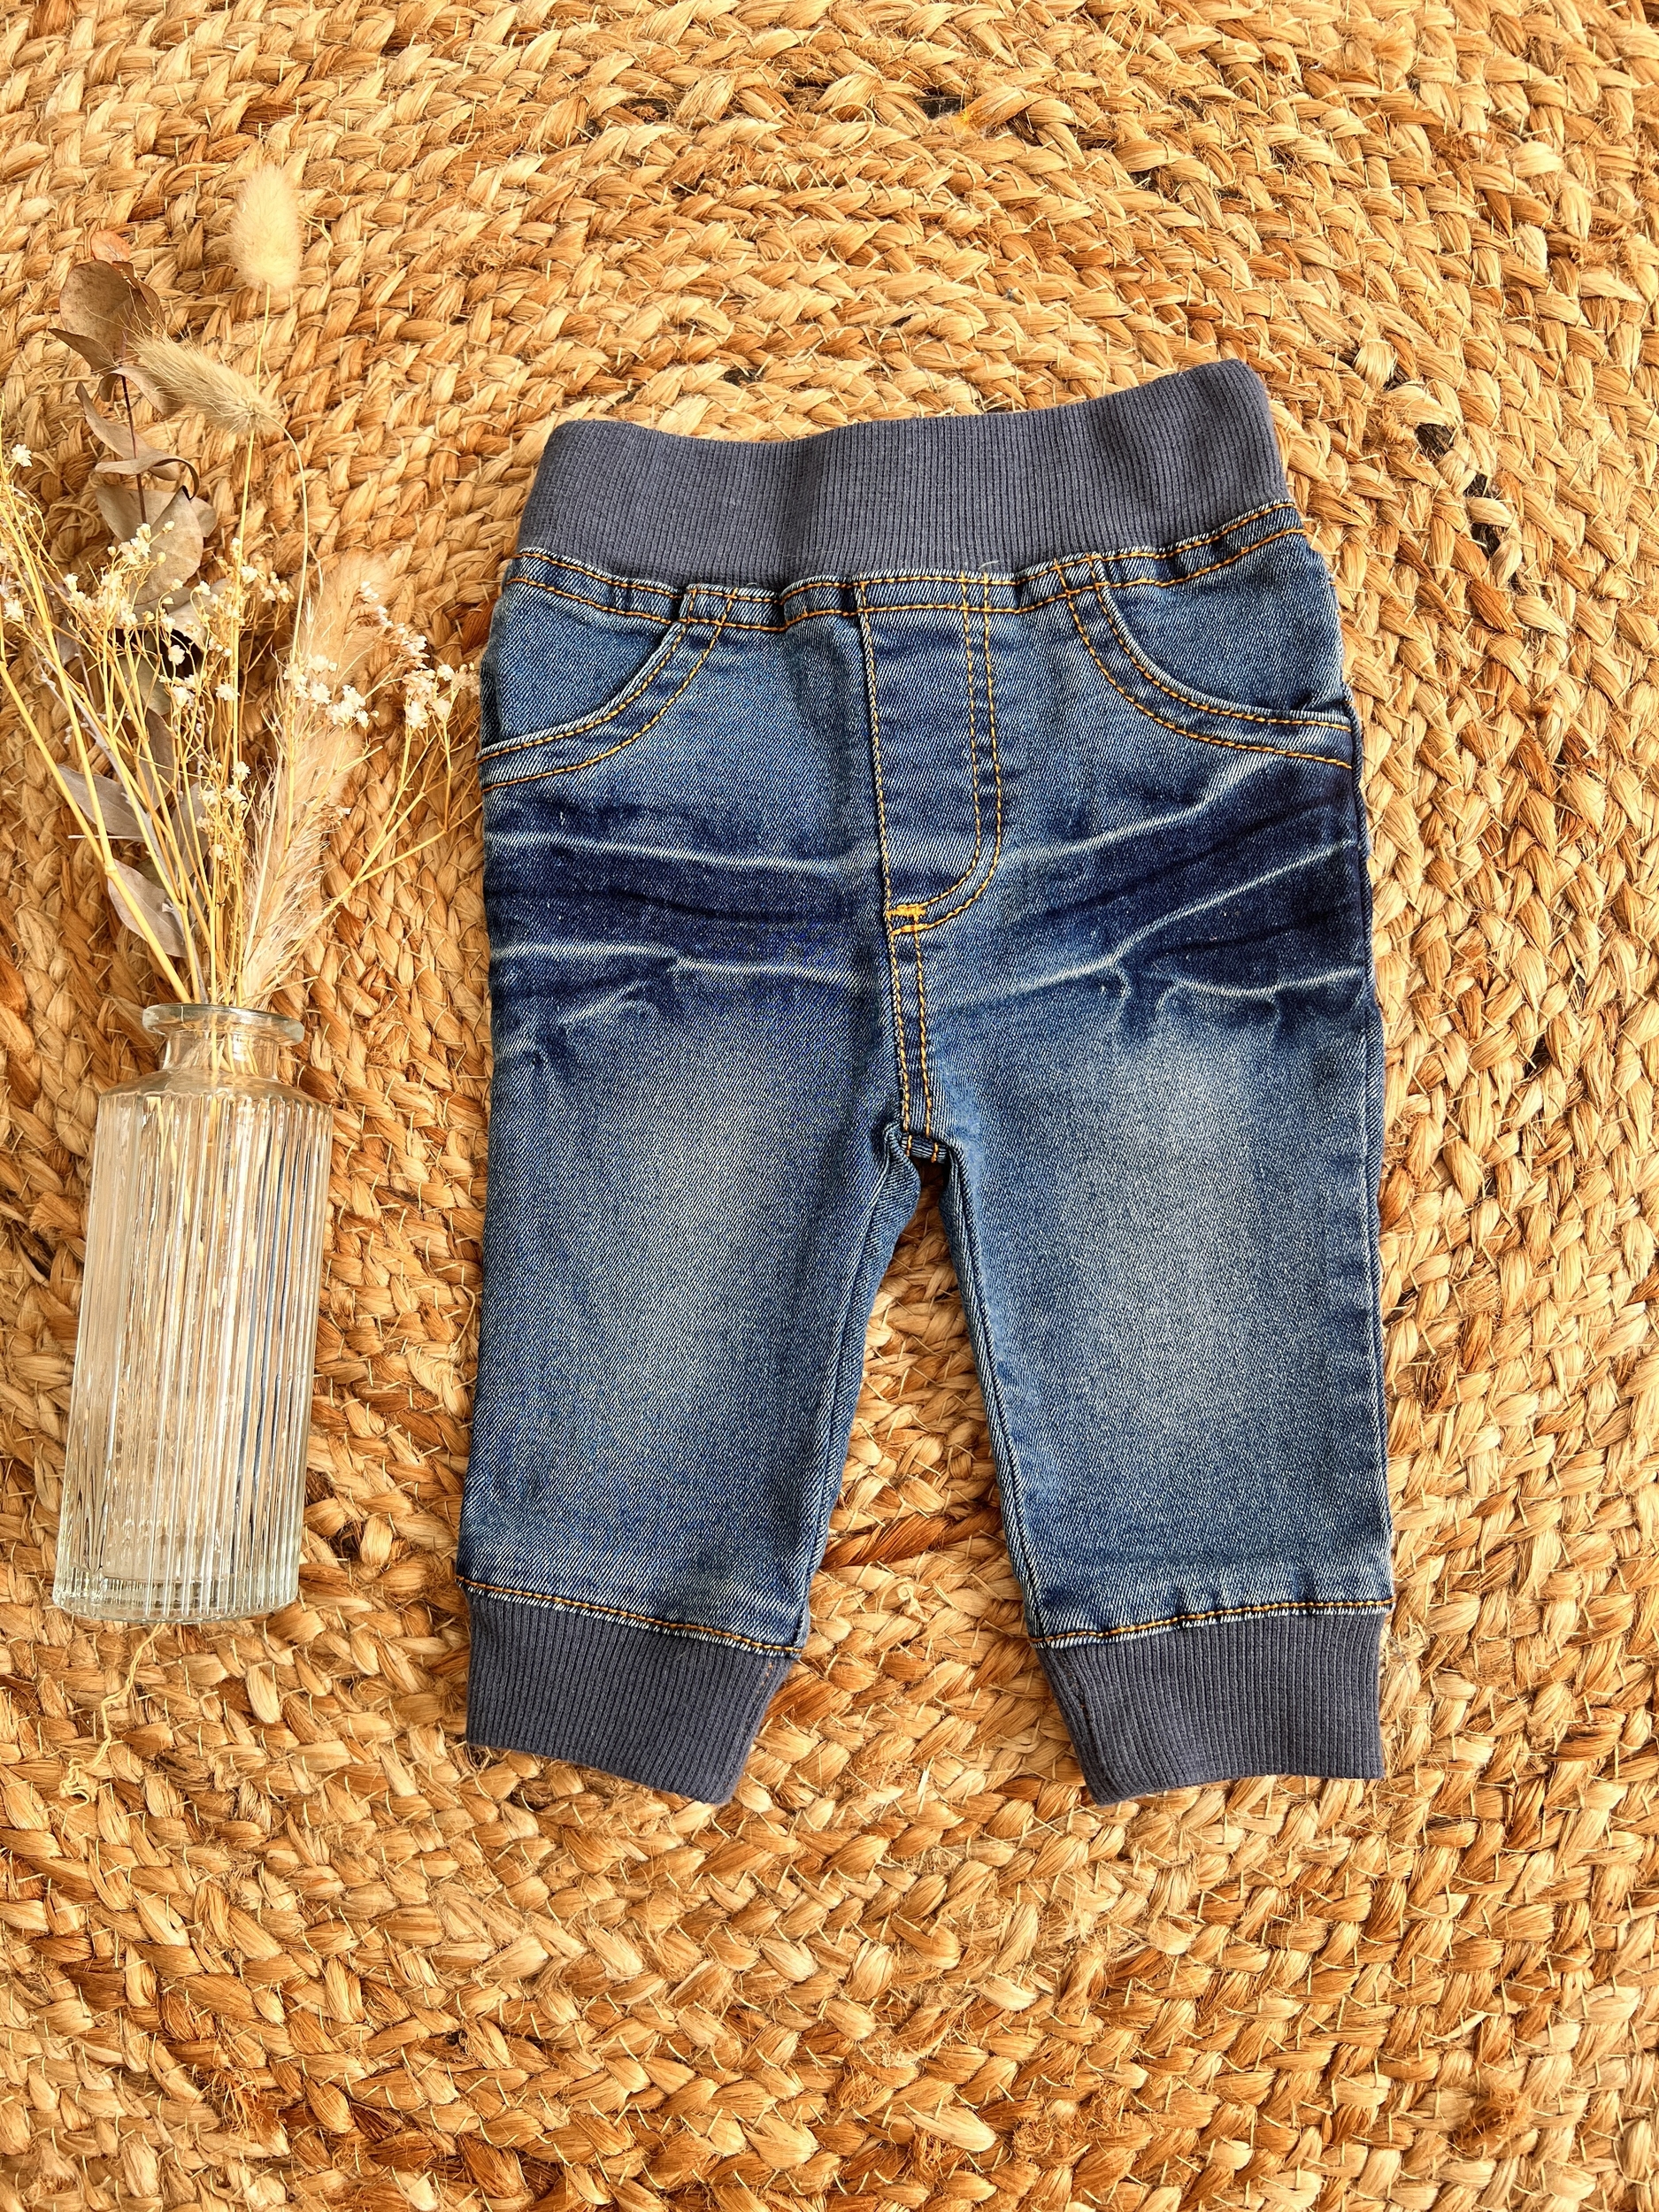 Pantalon jean bleu - Zeeman - 1 mois